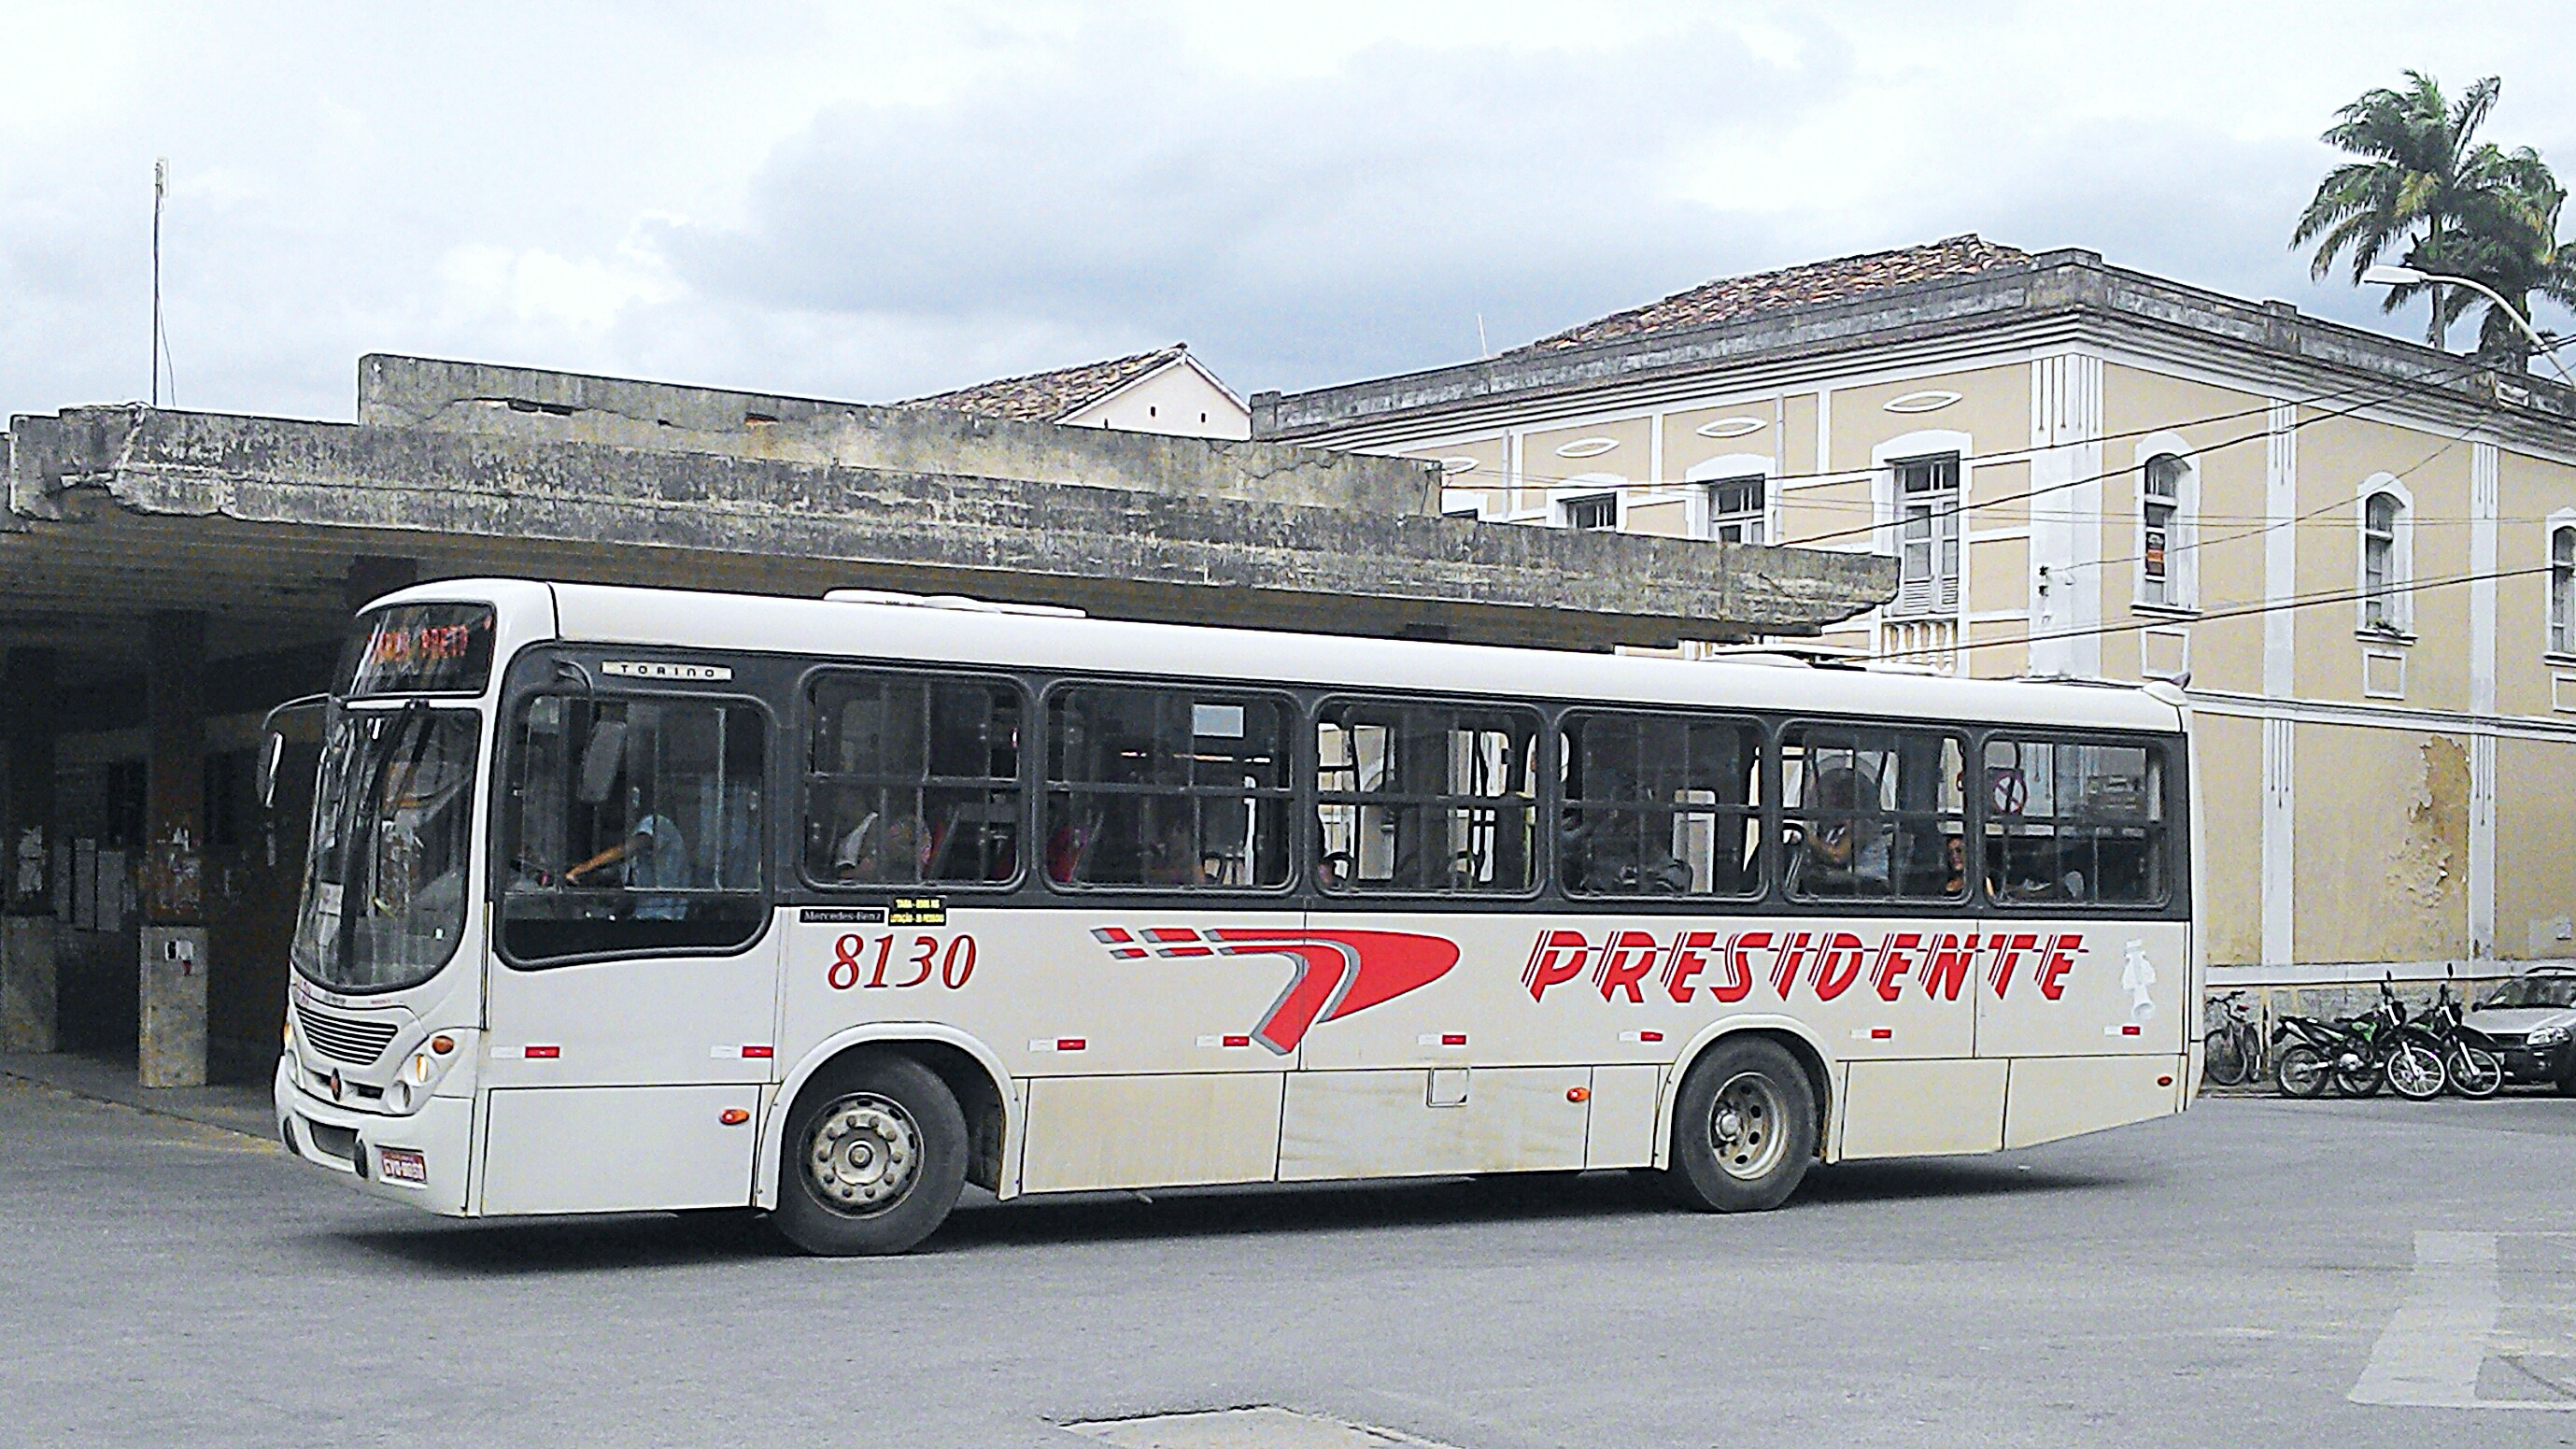 Prestadora de serviços de transporte público em São João del-Rei segue recebendo diversas críticas dos usuários